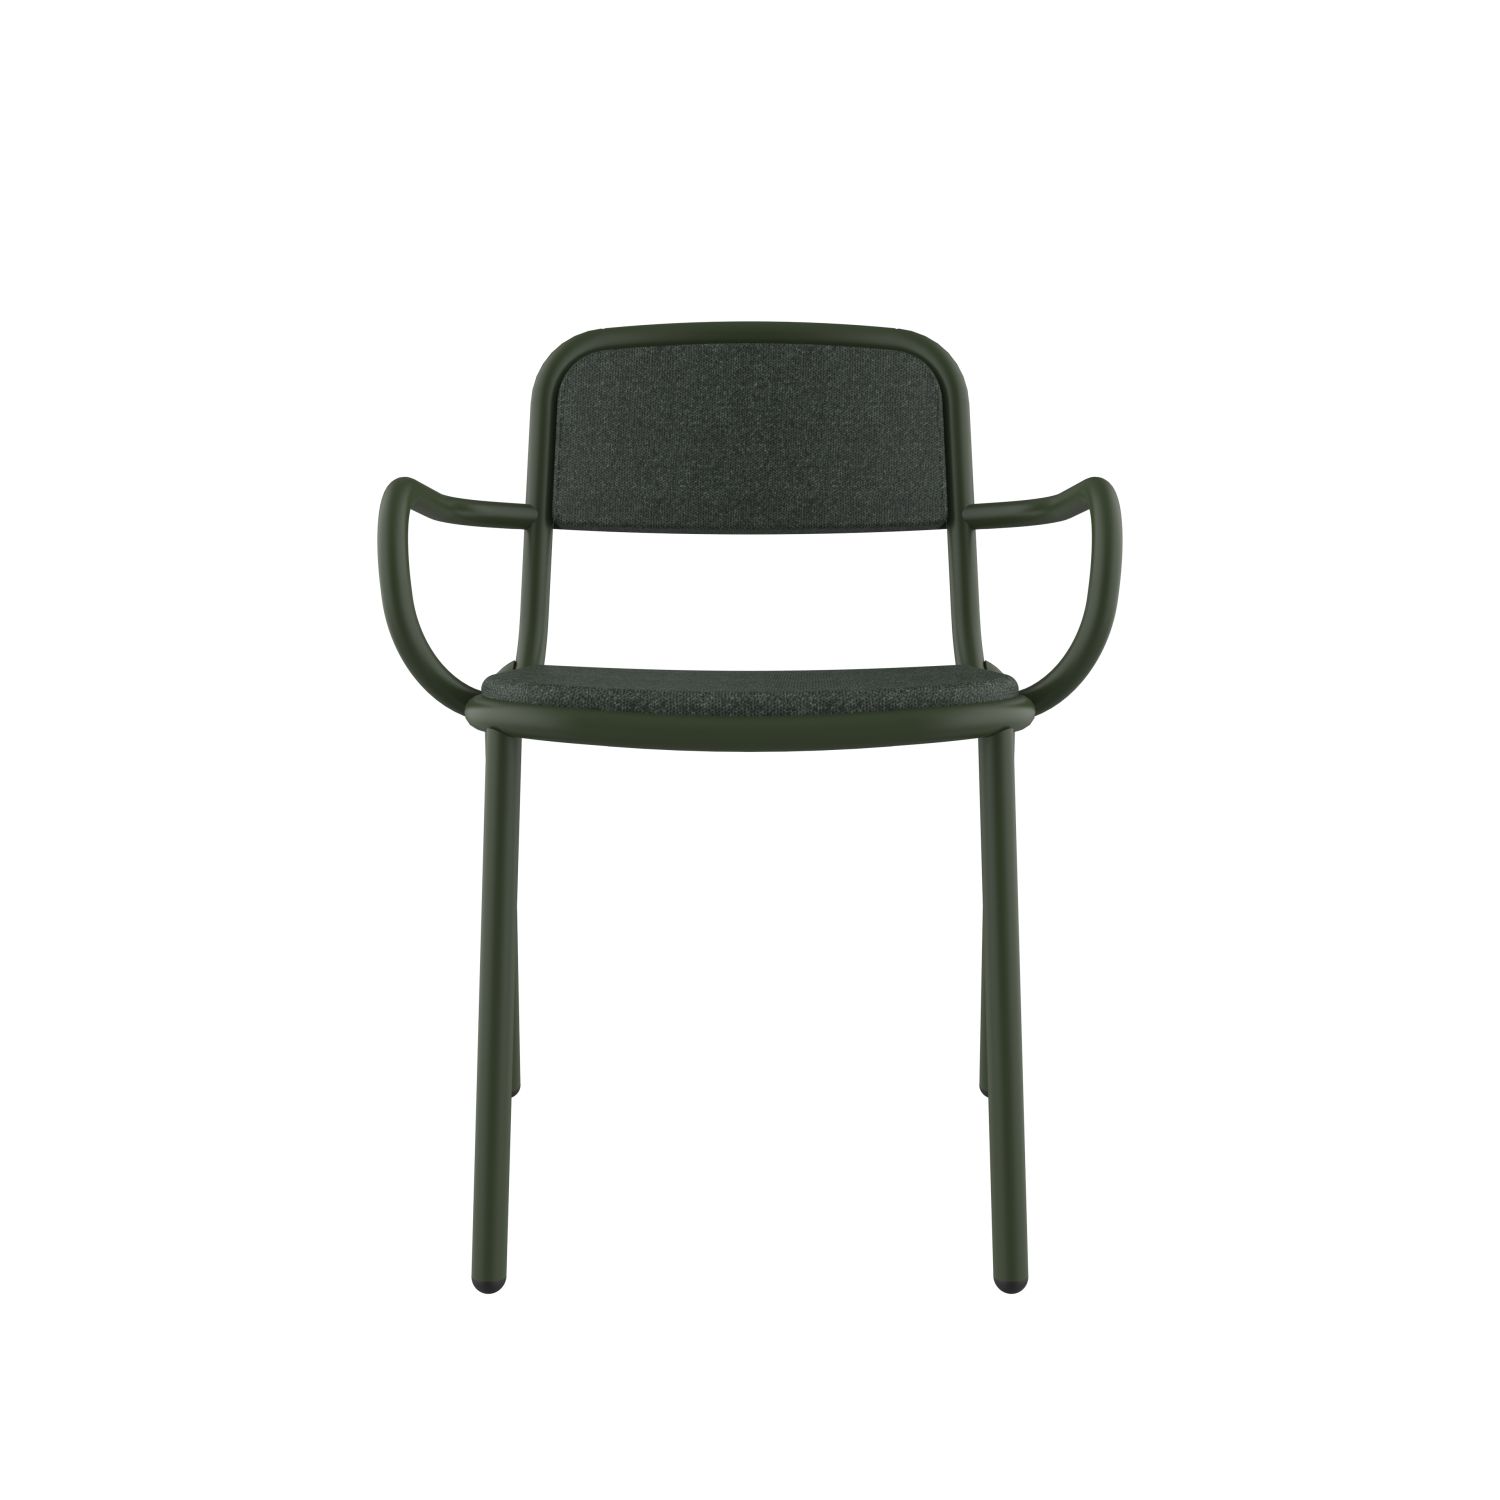 lensvelt stefan scholten loop chair upholsterd stackable with armrest moss summer green 38 price level 1 chrome green ral6020 hard leg ends